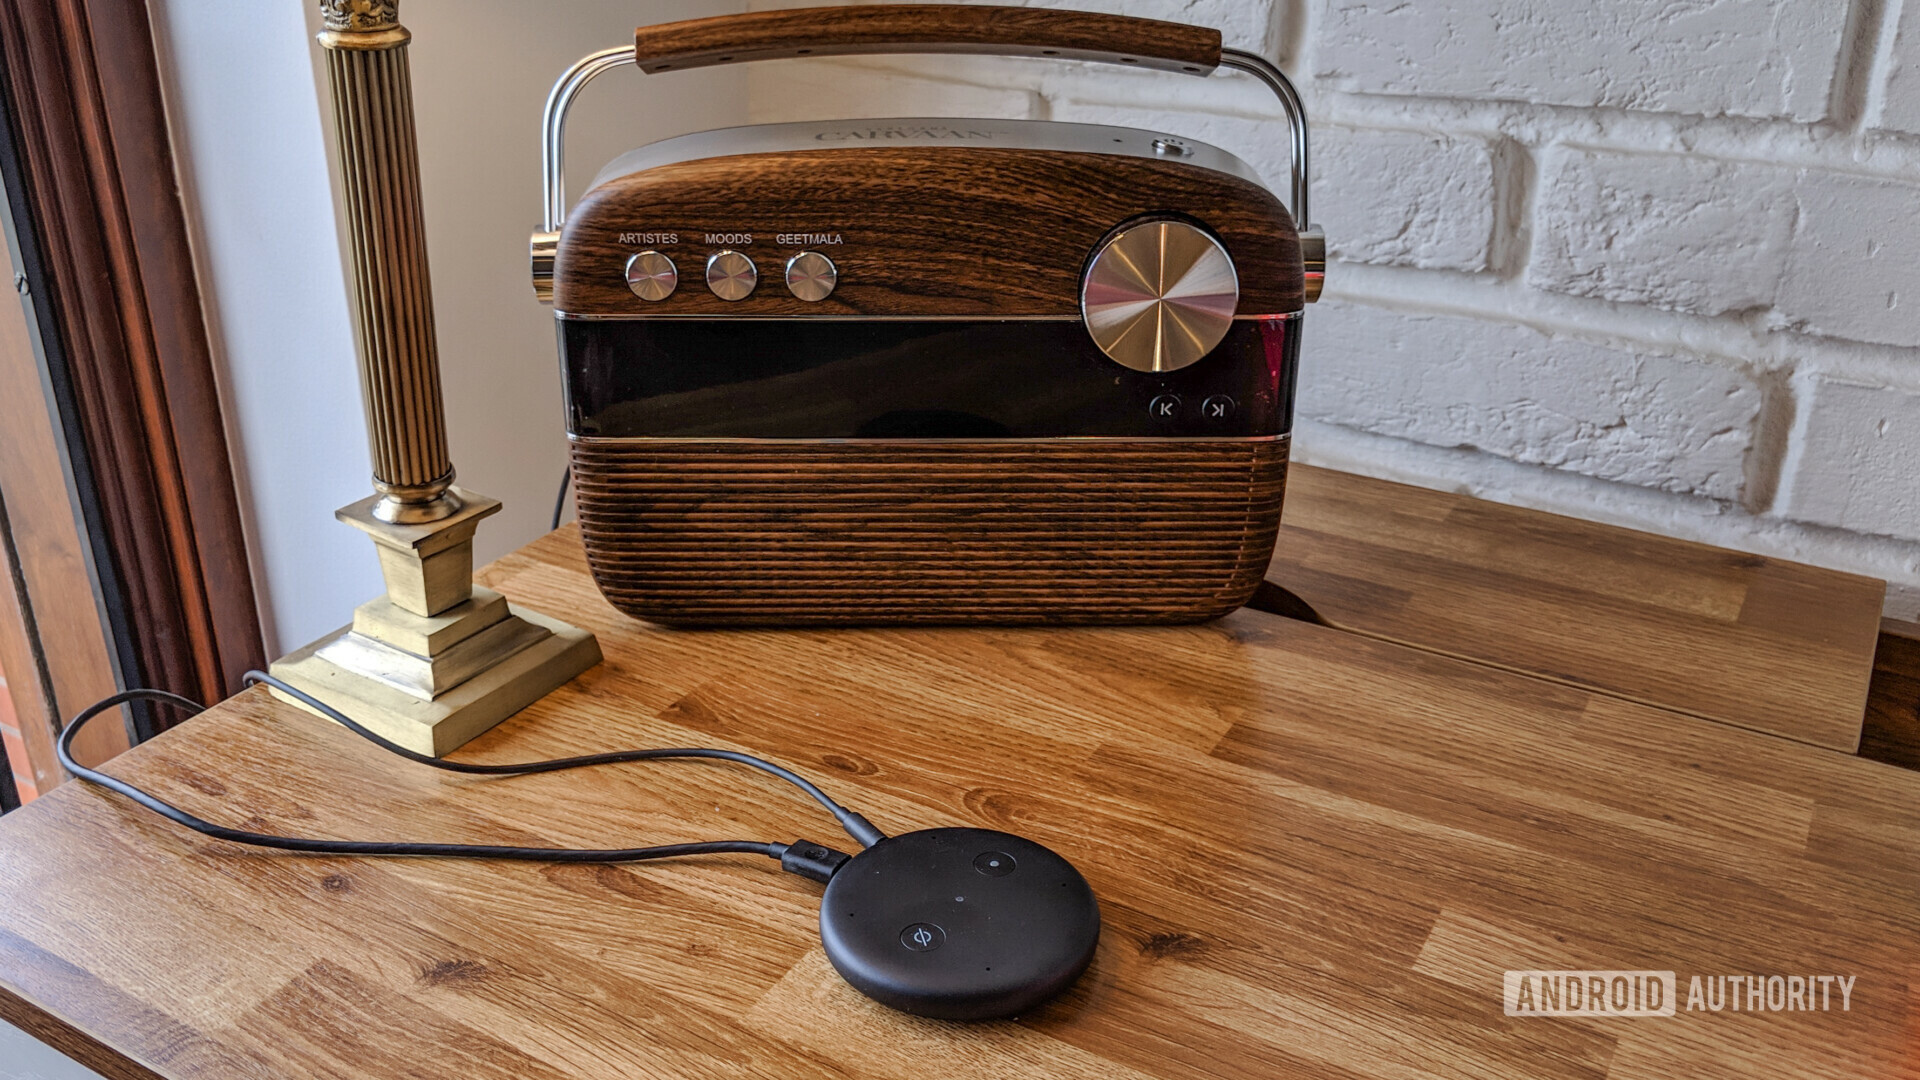 Amazon Echo Input next to a retro radio on a wooden table.